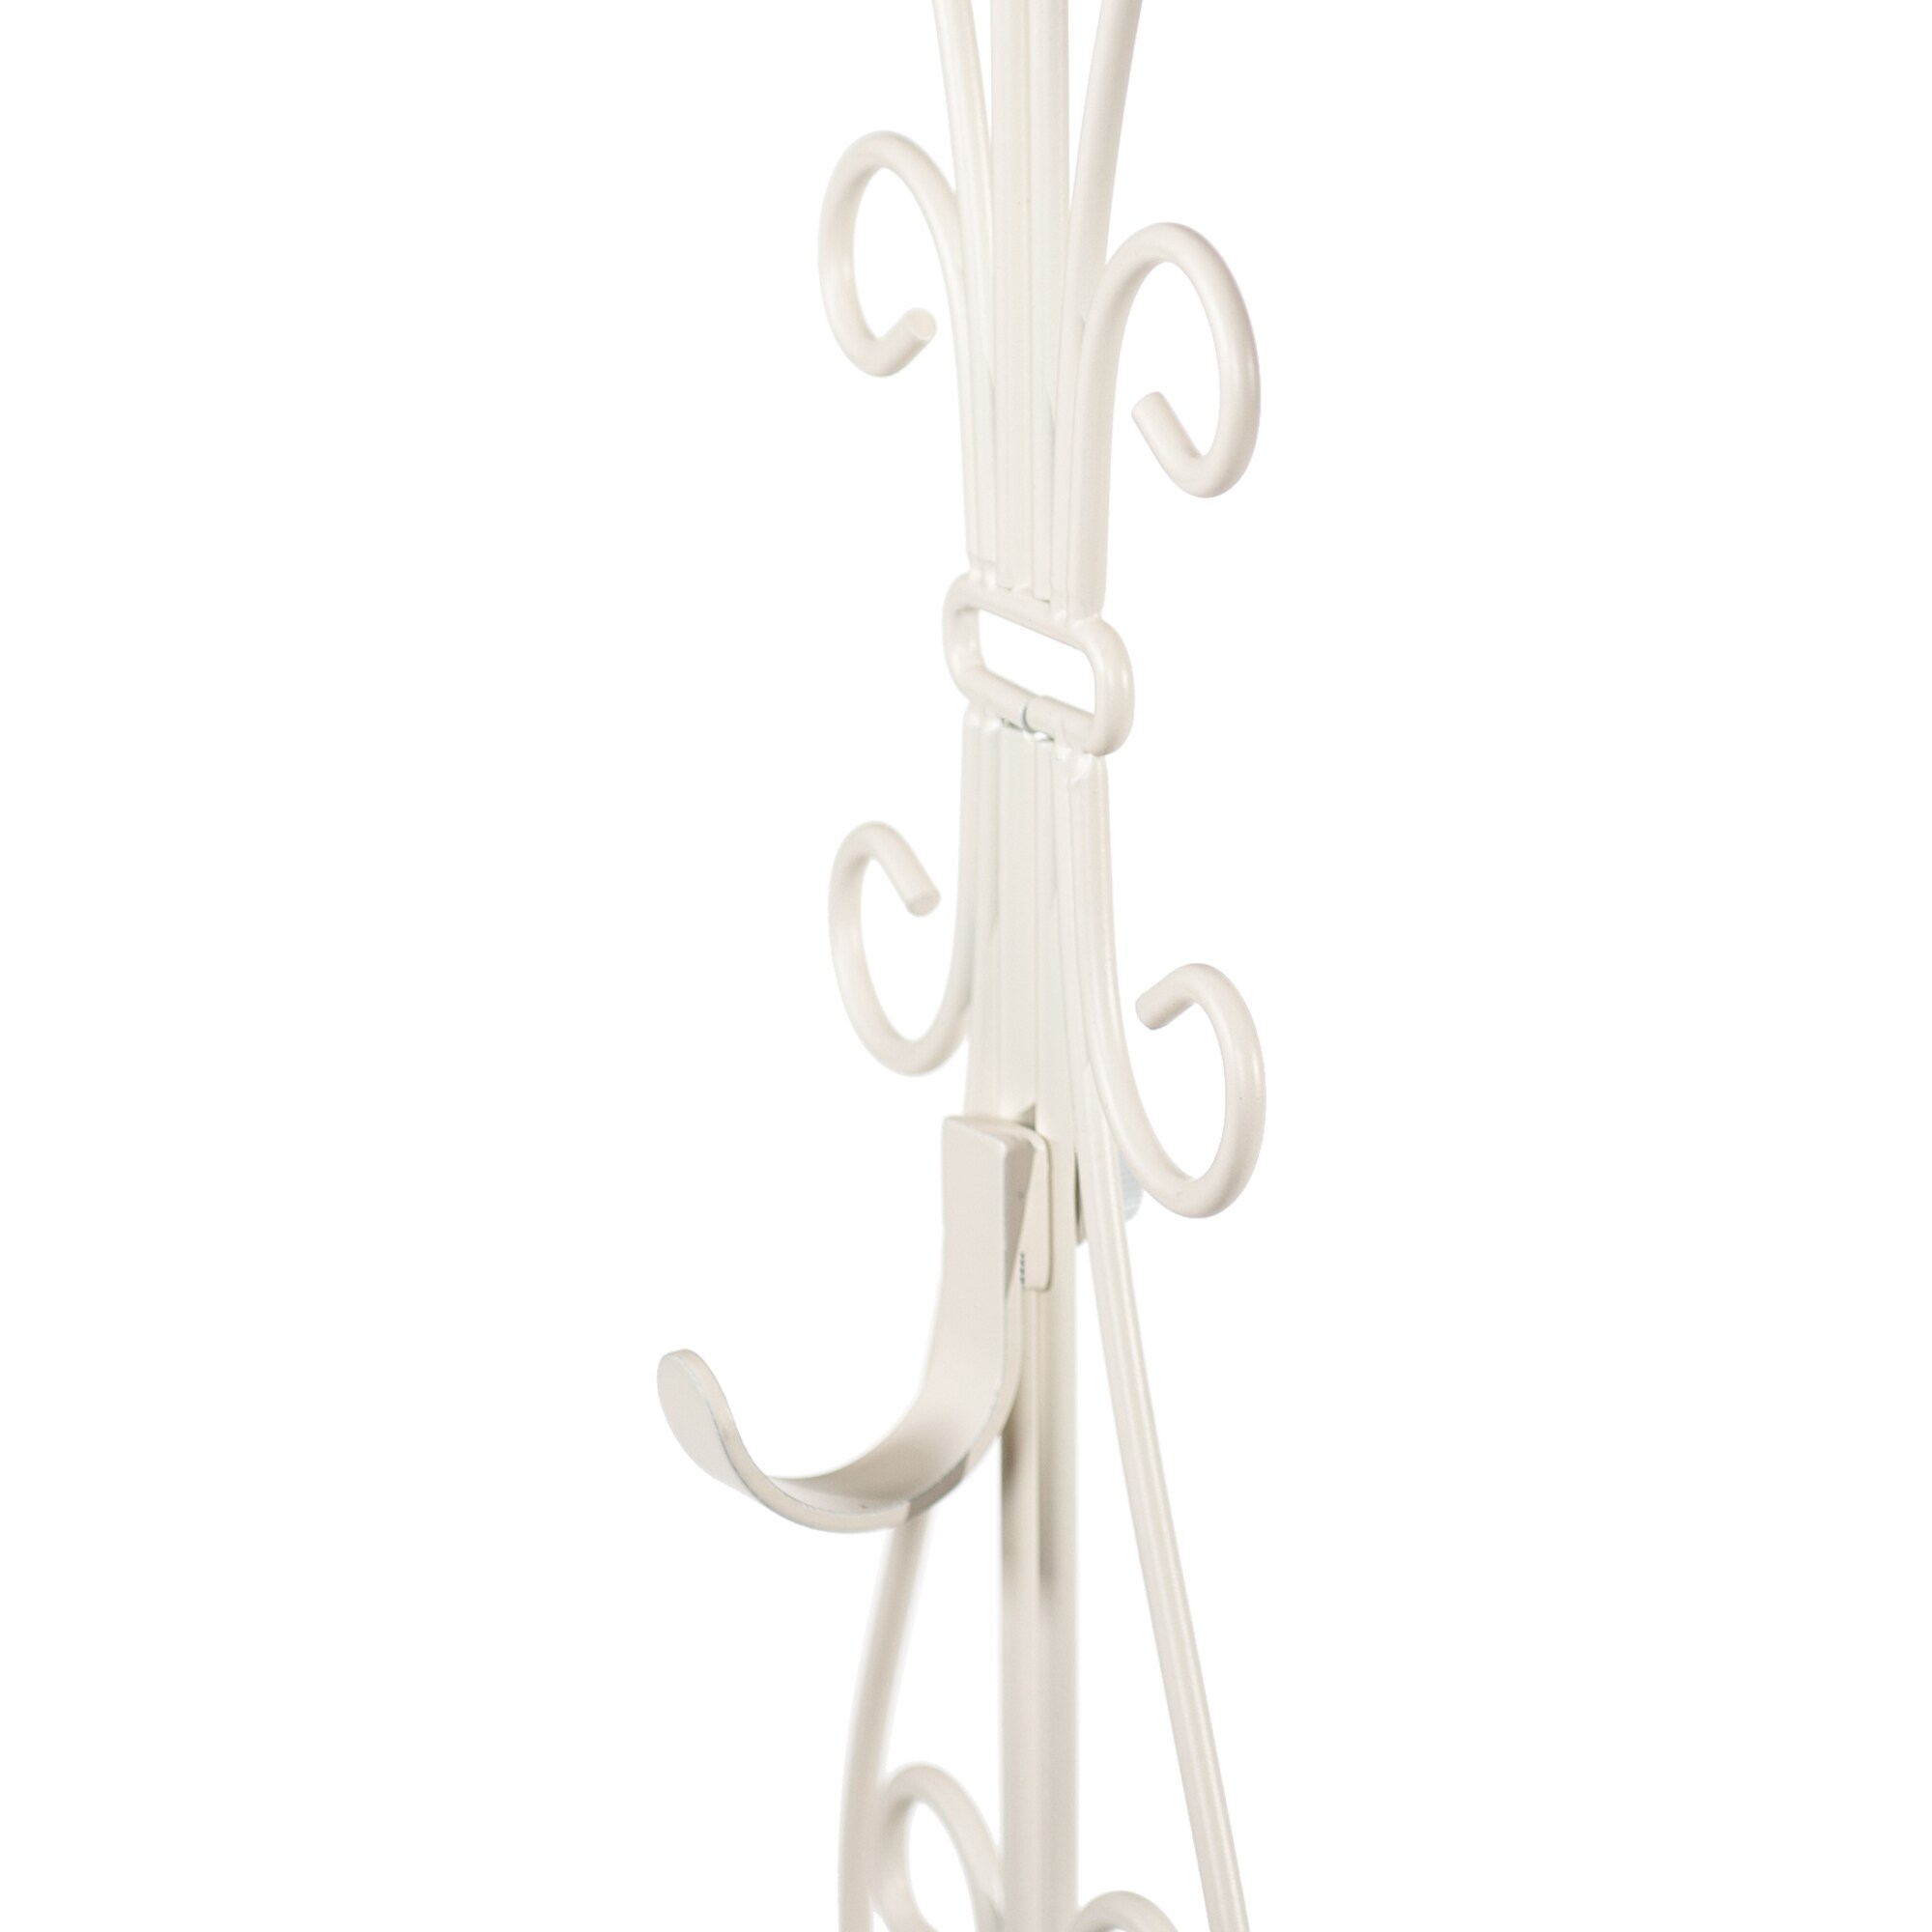 6 White Metal 13.25 Over Door Wreath Hangers, Bulk Buy - Candles4Less